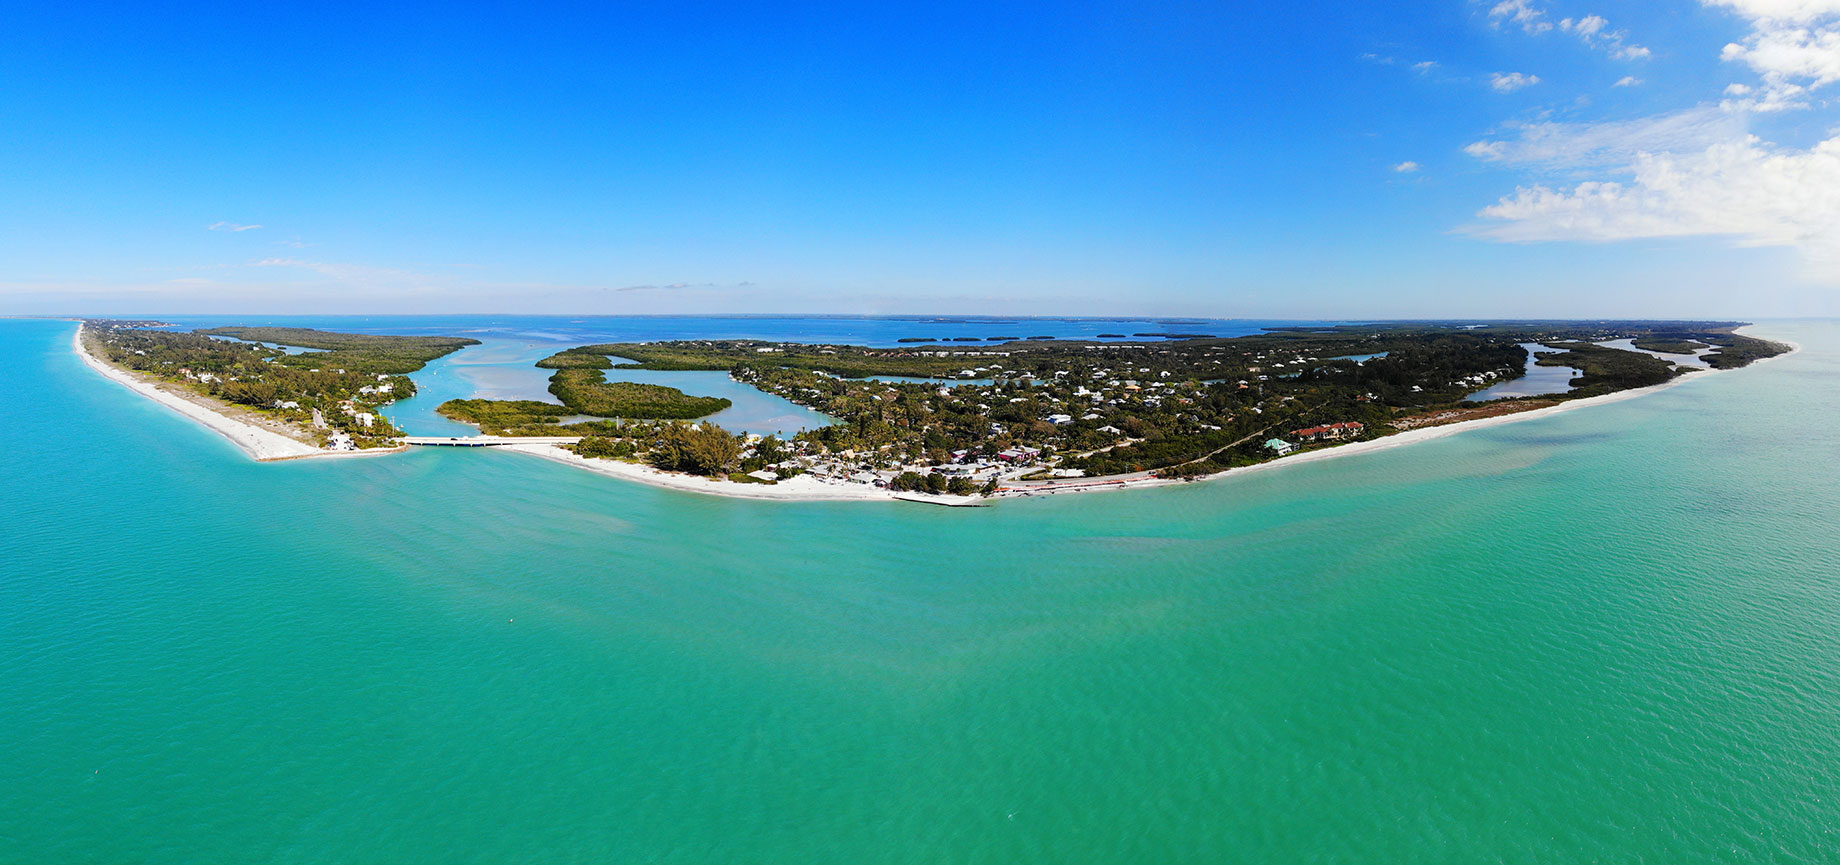 Sanibel Island, Florida – A Seashell Paradise